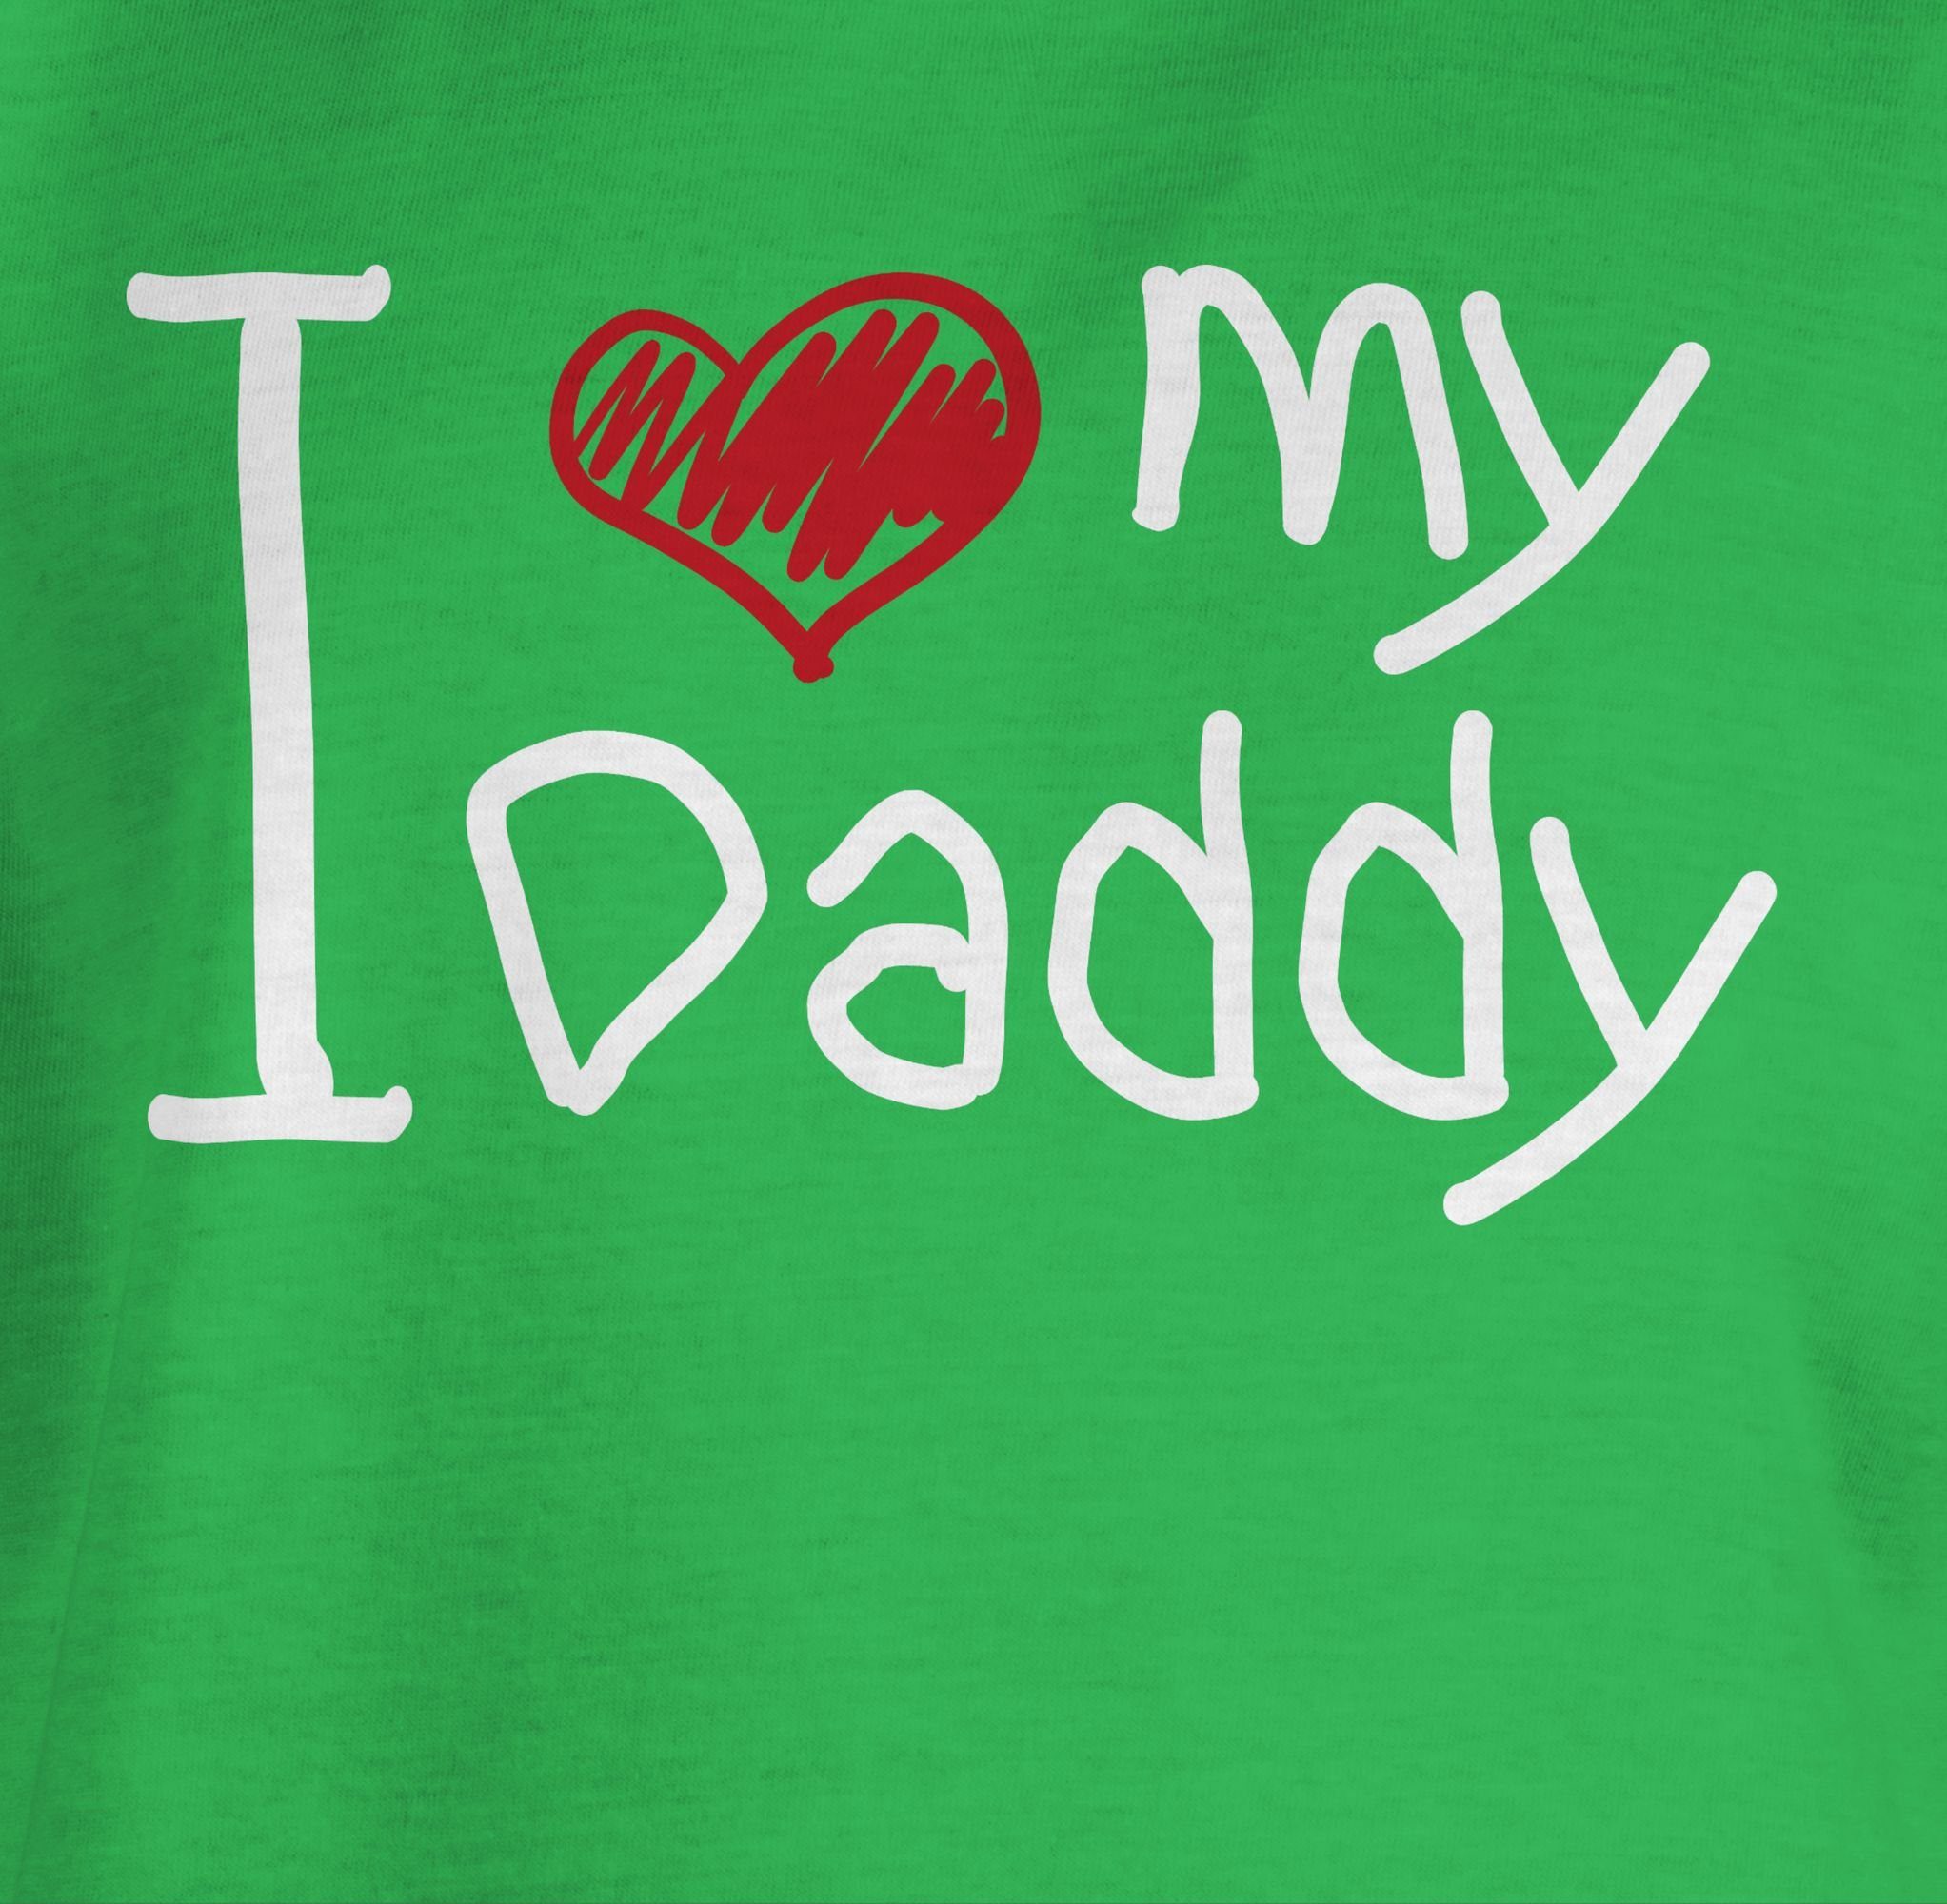 3 für Vatertag weiß Grün Geschenk Daddy love my Shirtracer I T-Shirt quer Papa